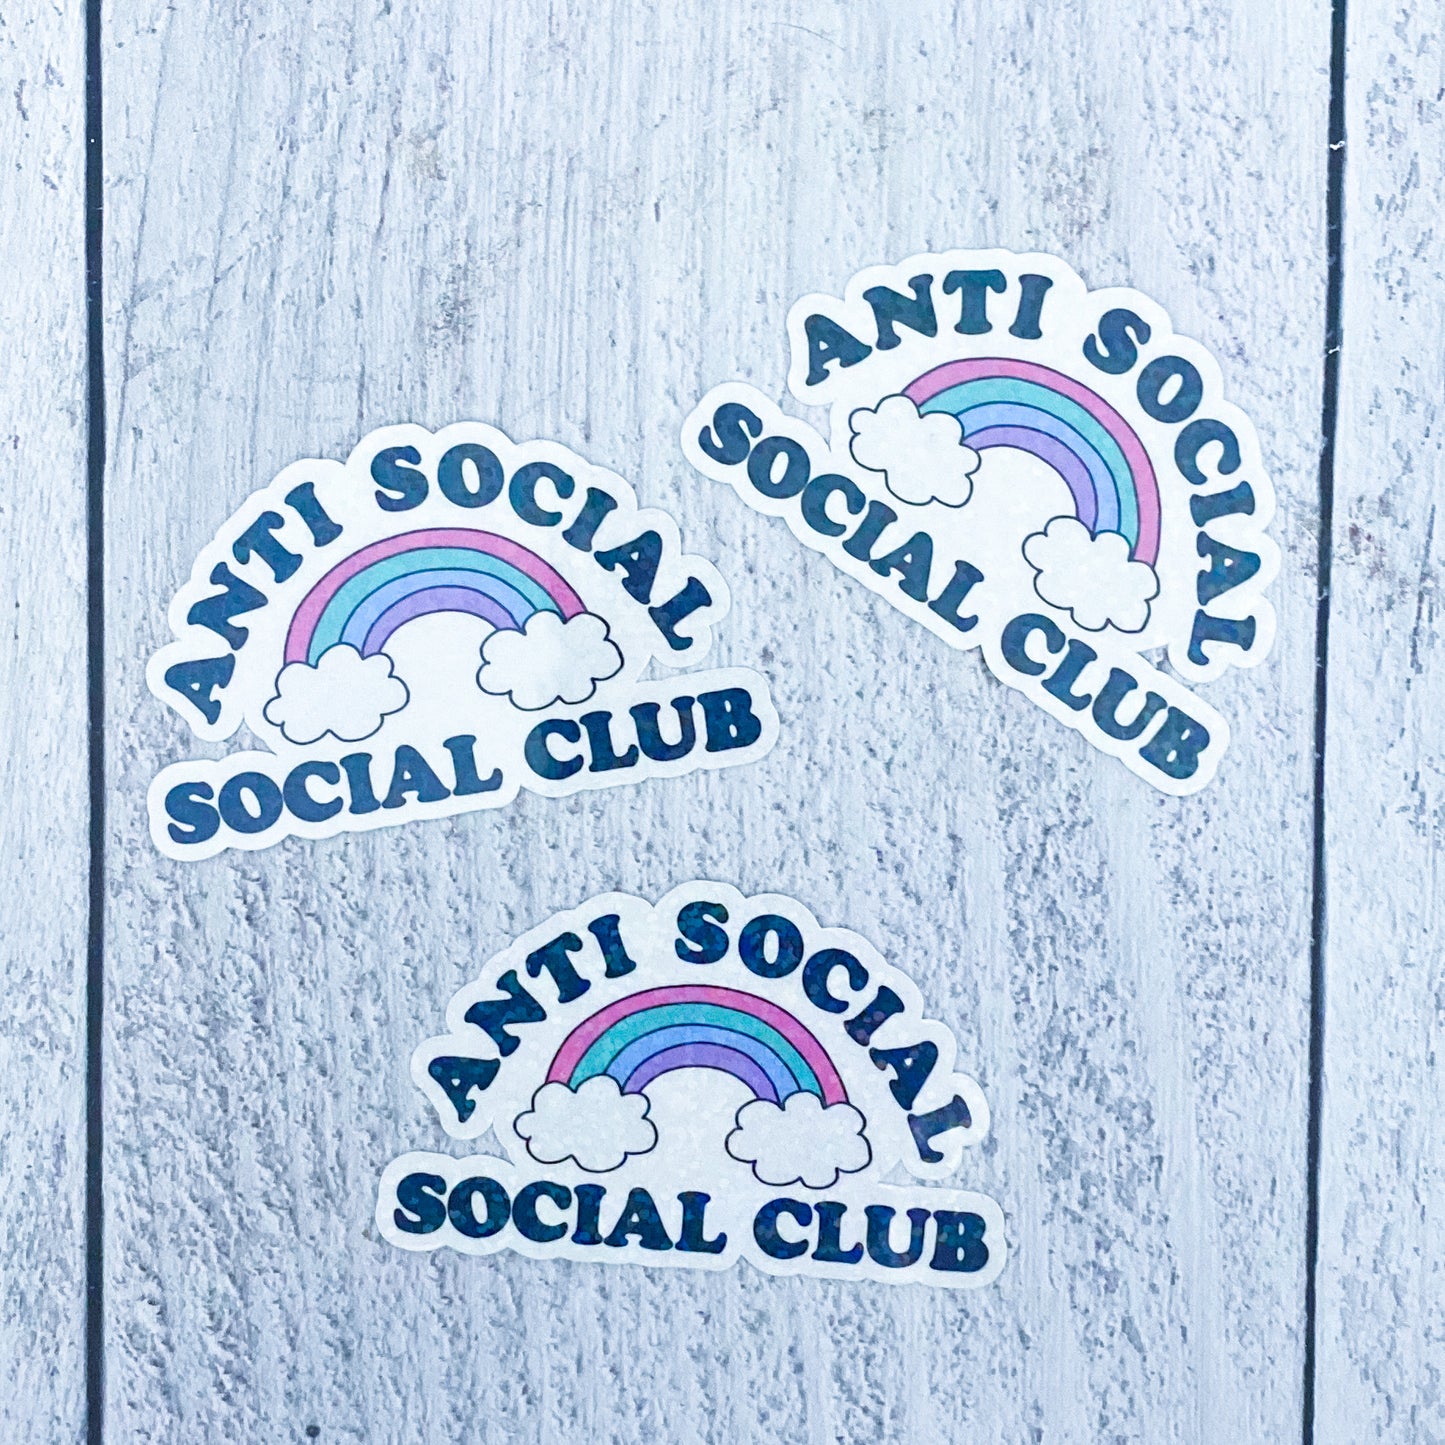 Anti Social Club